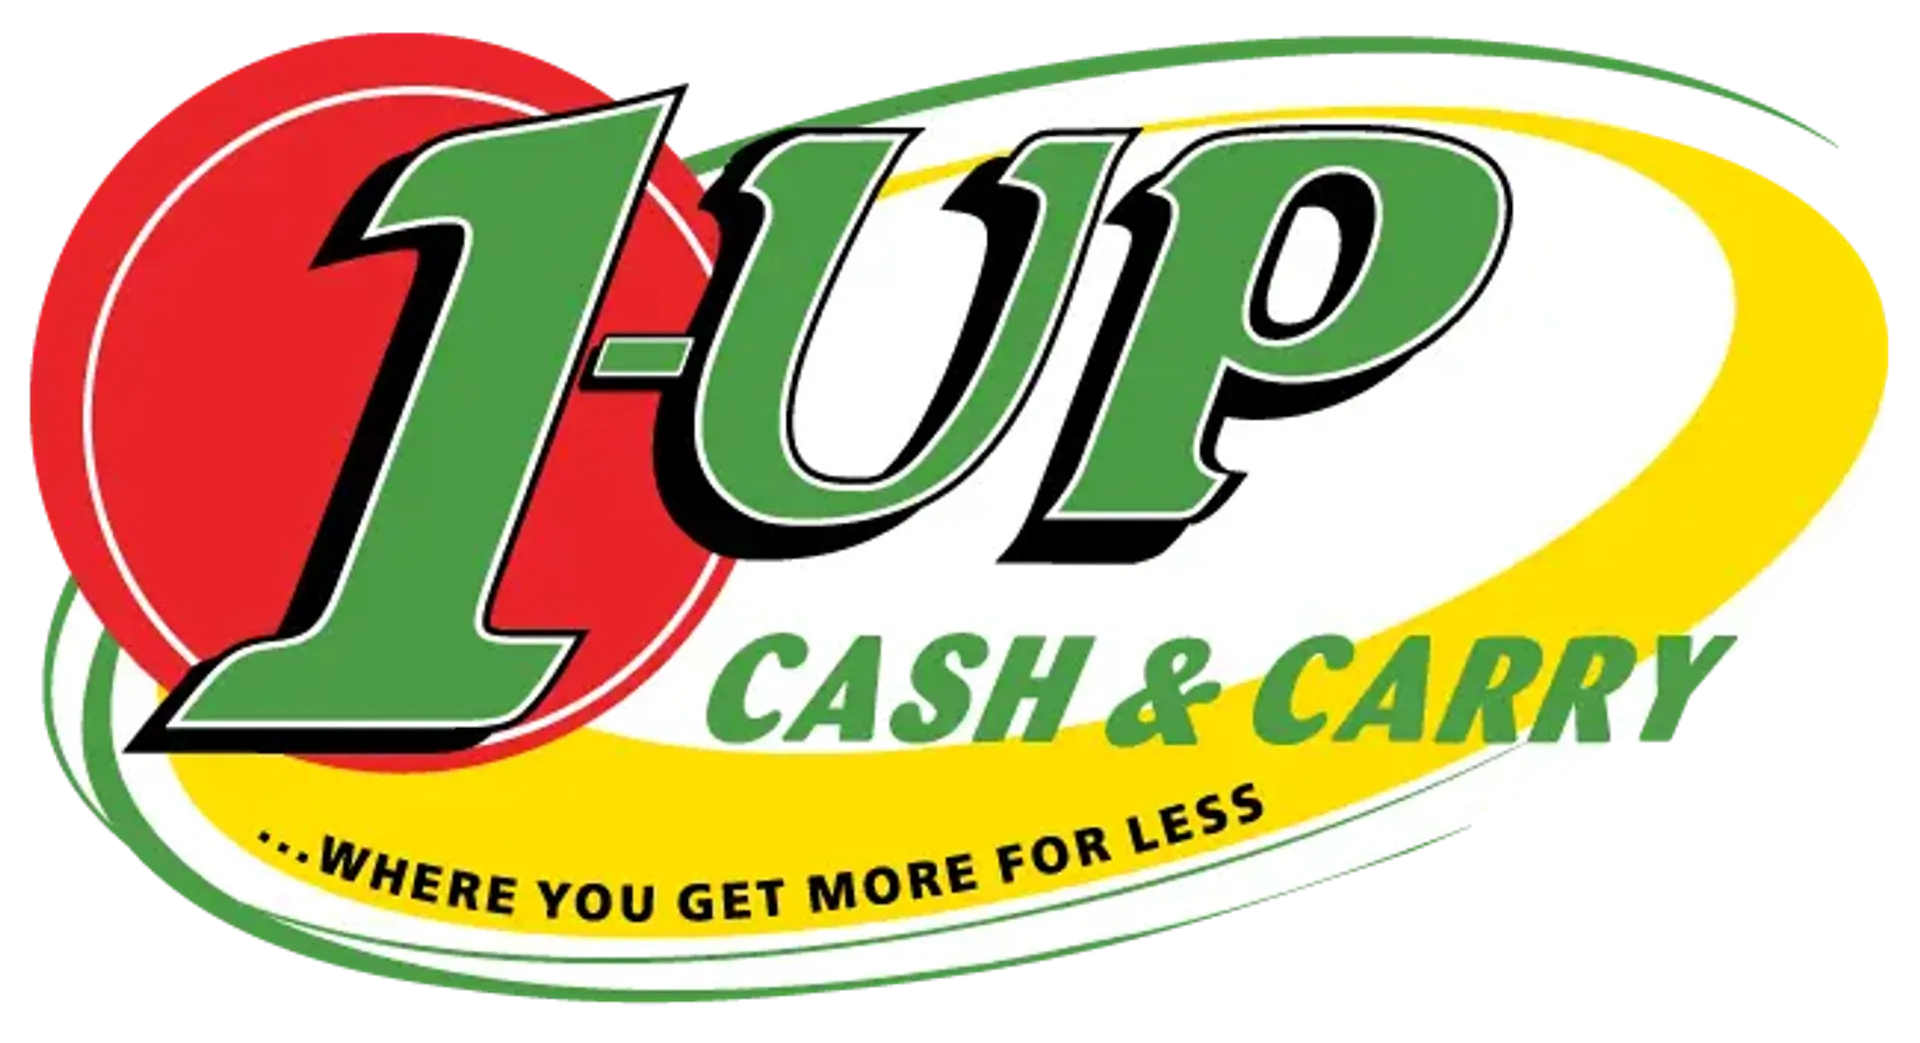 1UP CASH & CARRY logo